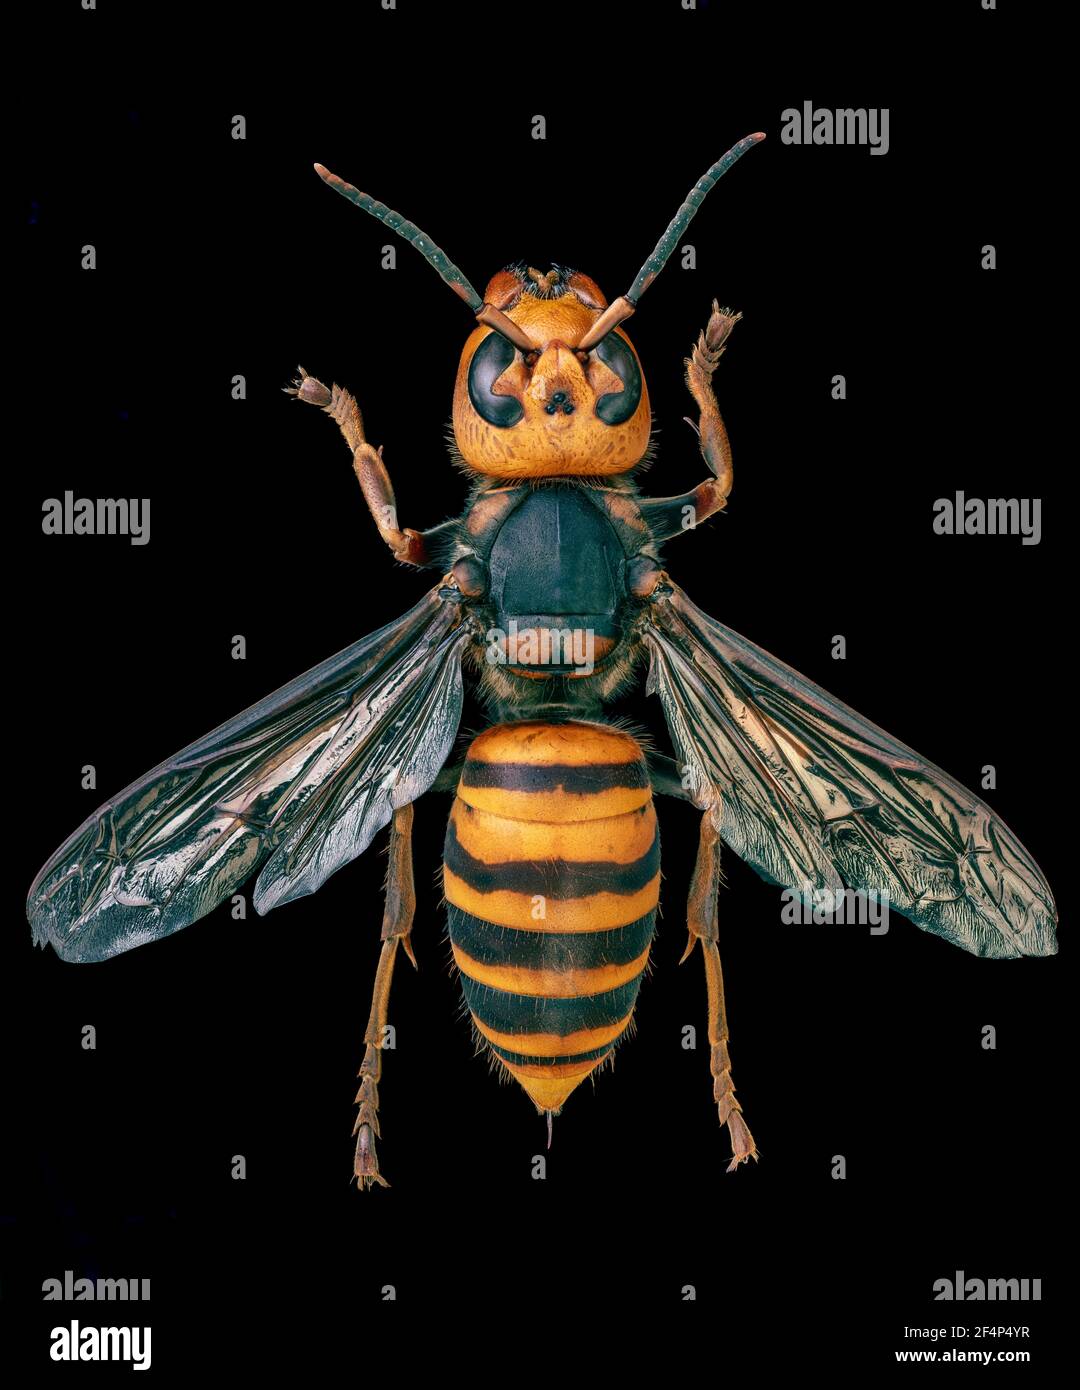 Hornet gigante asiatico, cornetto gigante giapponese, anche Hornet di Murder (Vespa mandarinia) Foto Stock